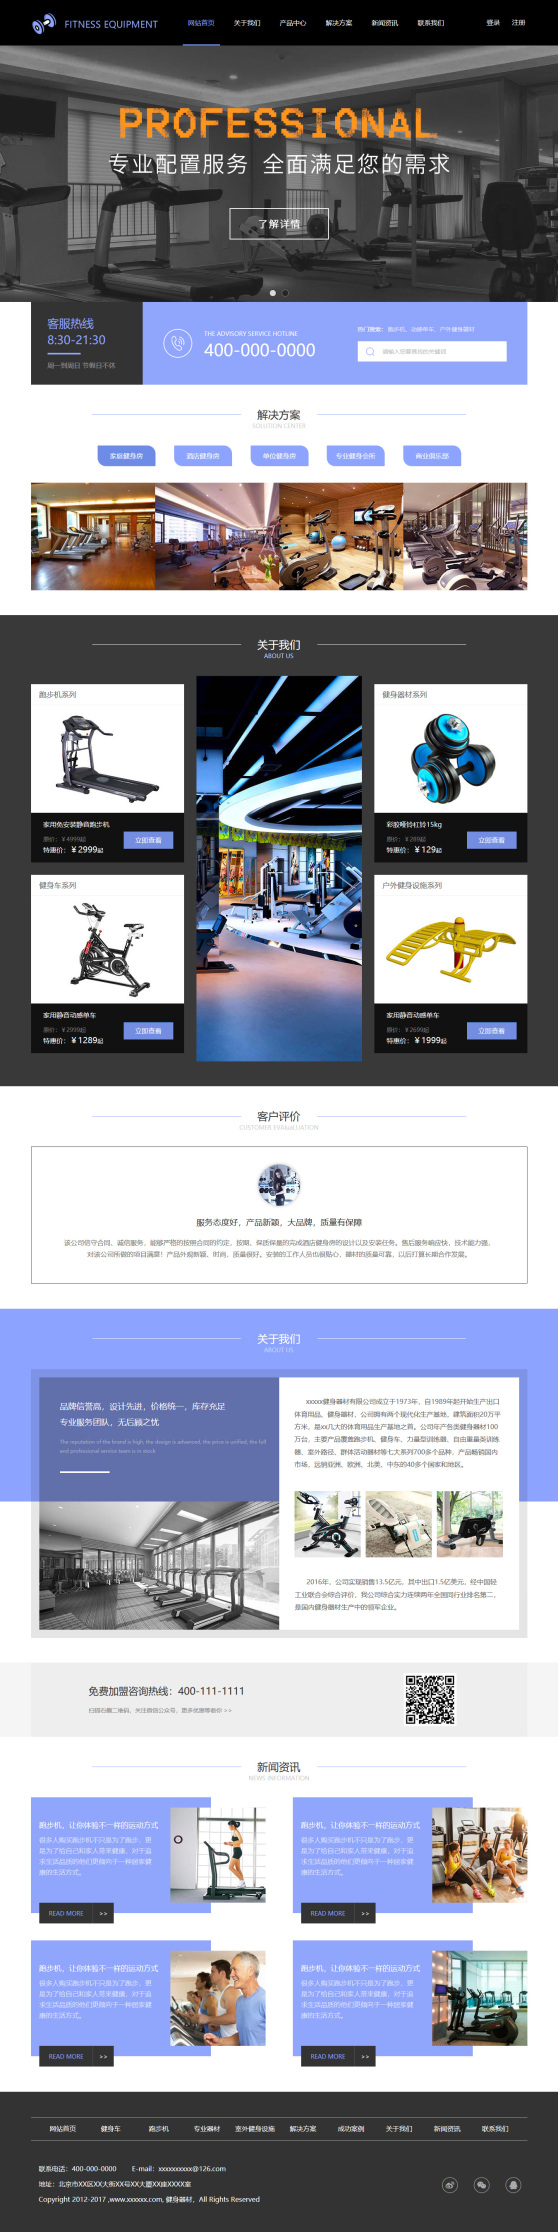 创新健身器材公司网站模板